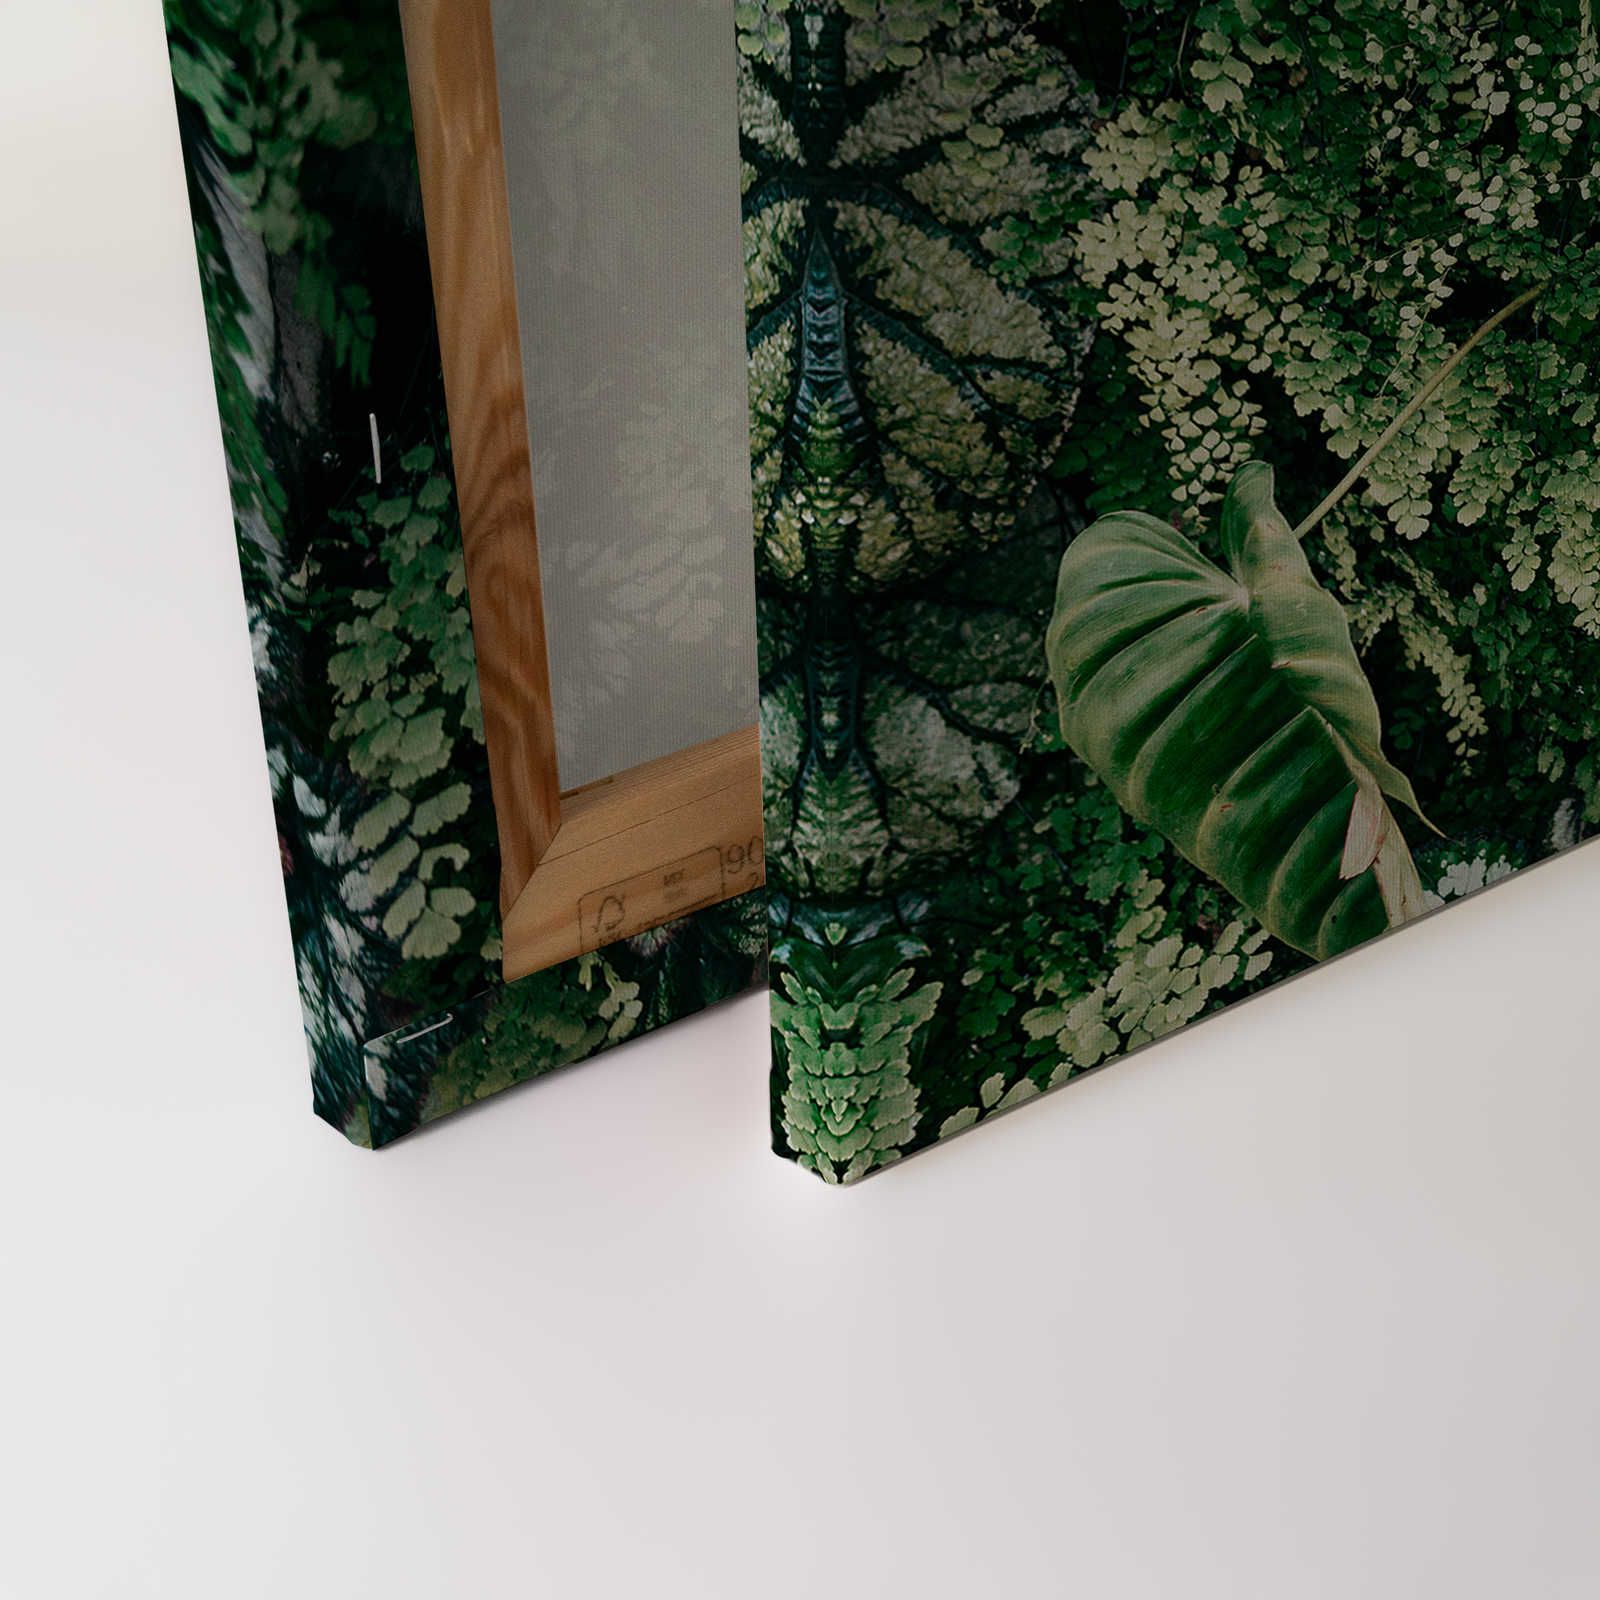             Deep Green 2 - Leinwandbild Blätterdickicht, Farne & Hängepflanzen – 0,90 m x 0,60 m
        